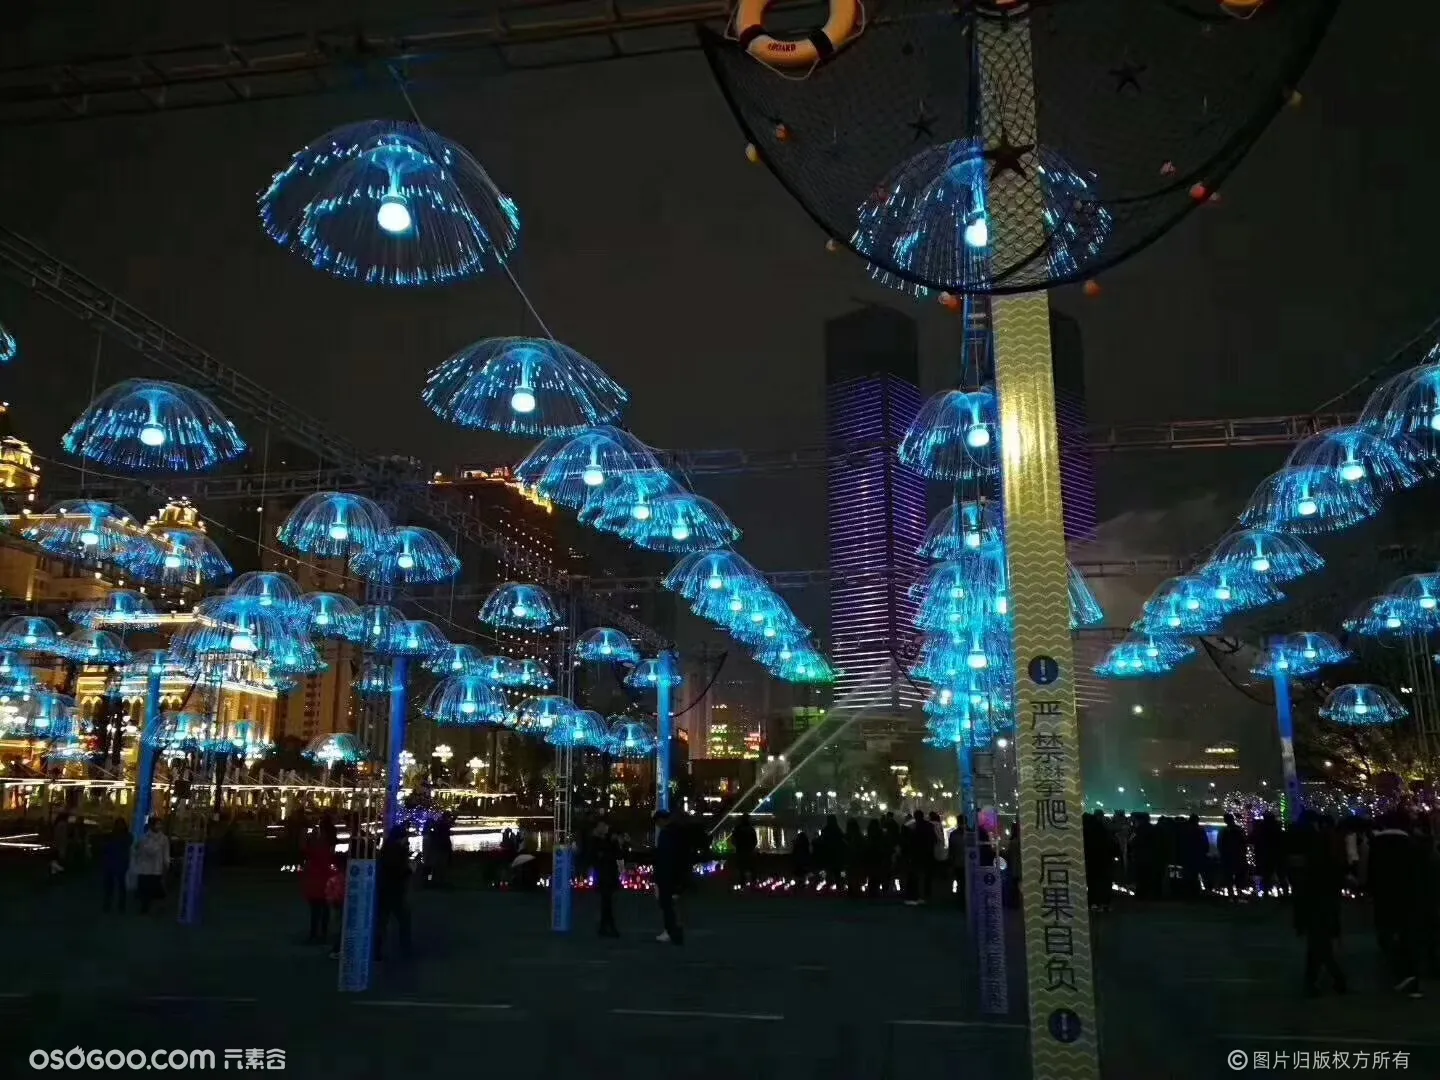 七色LED水母灯追光变换大型灯光节造型景观花灯设计制作